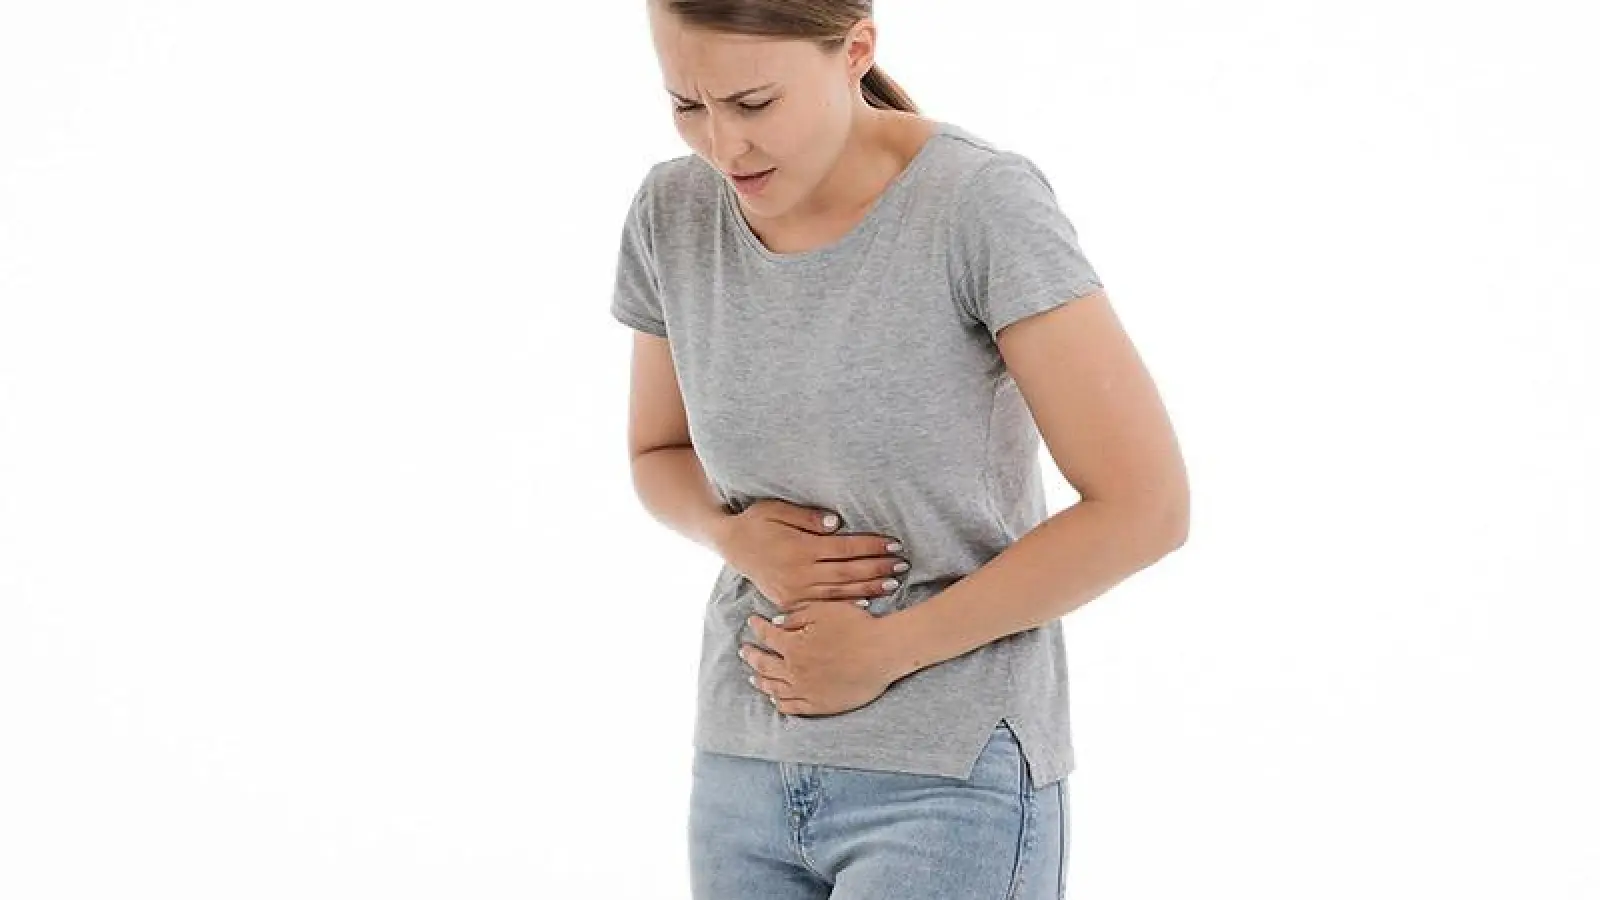 Der Darm - ein unterschätztes Organ im Körper? (Foto: pixabay)